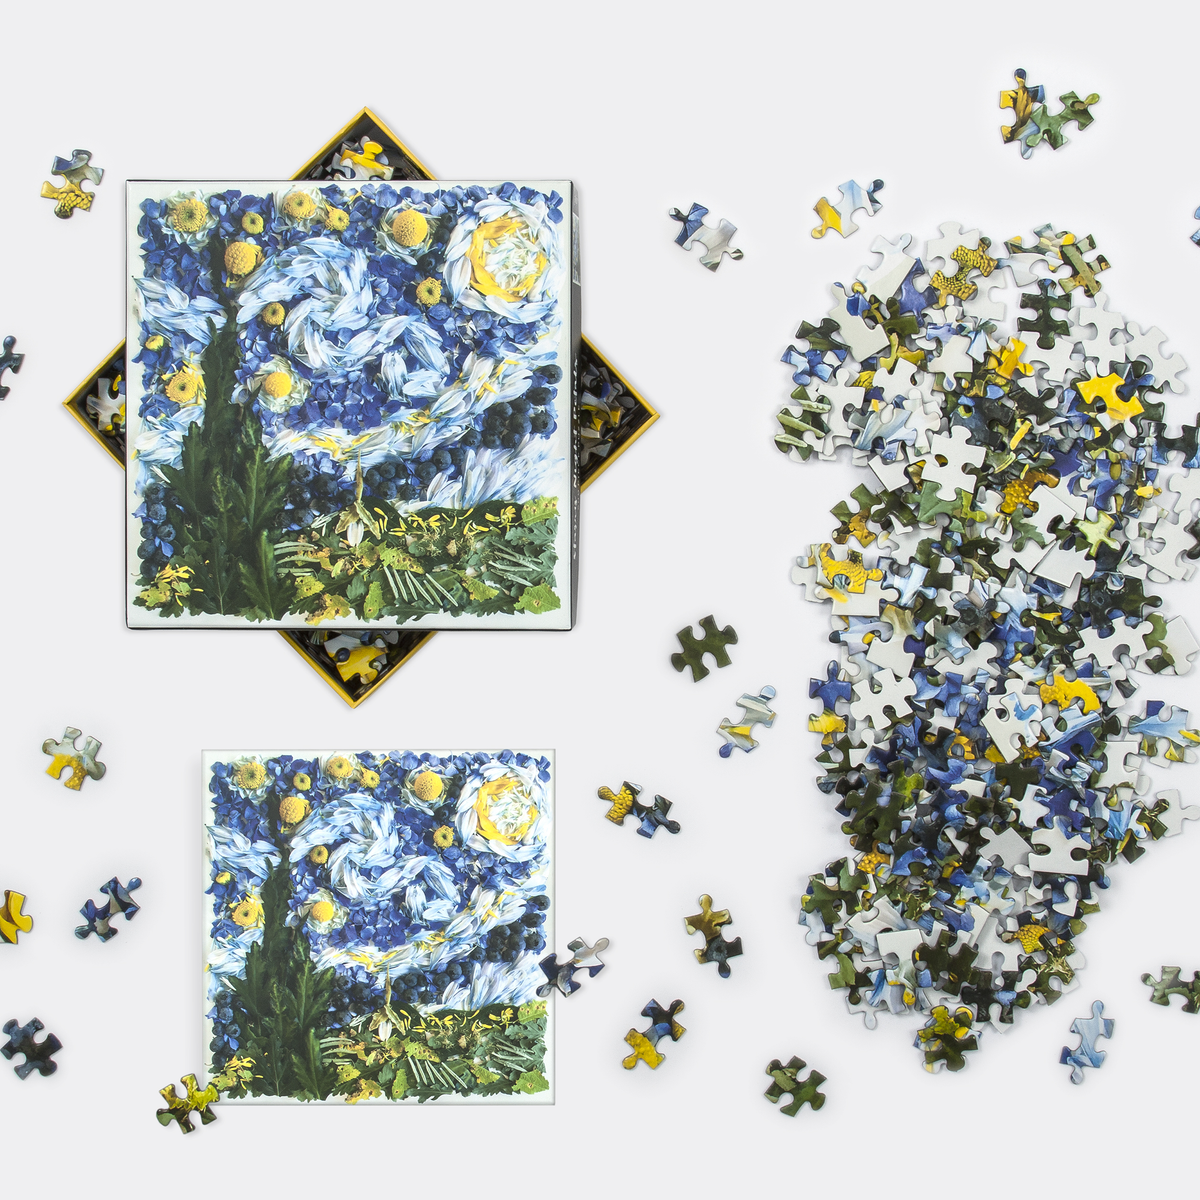 Starry Night Petals 500 Piece Jigsaw Puzzle 500 Piece Puzzles Bridget Collins 